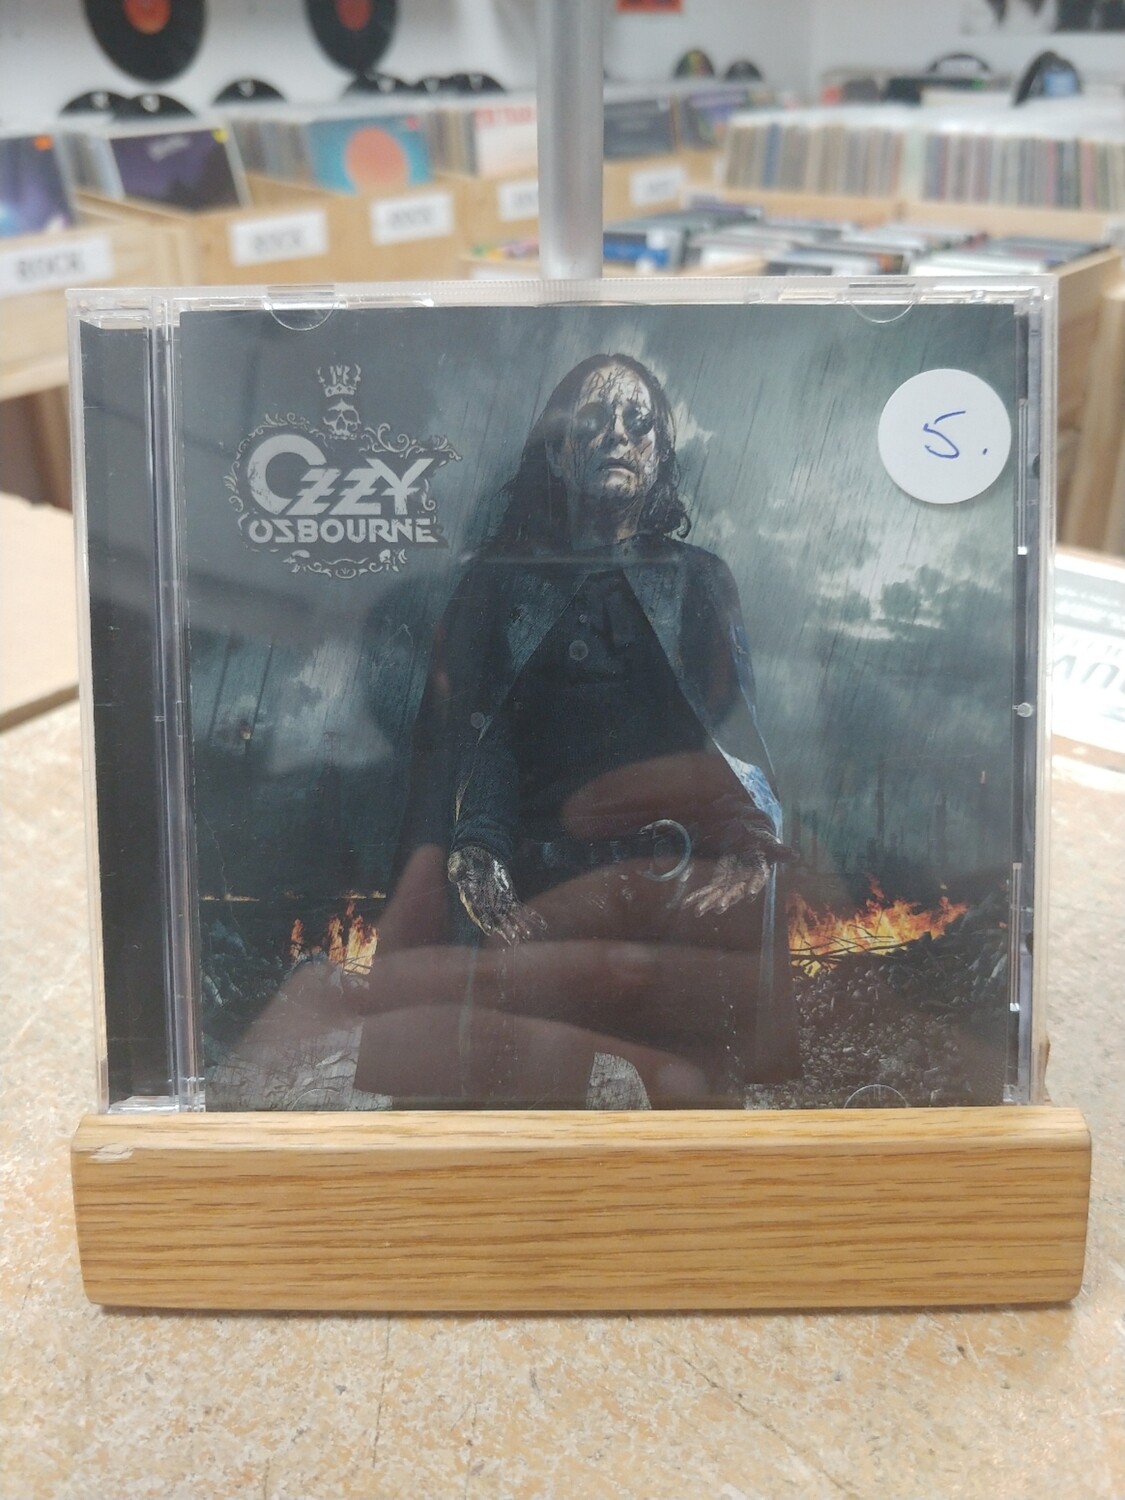 Ozzy Osbourne - Black Rain (CD)